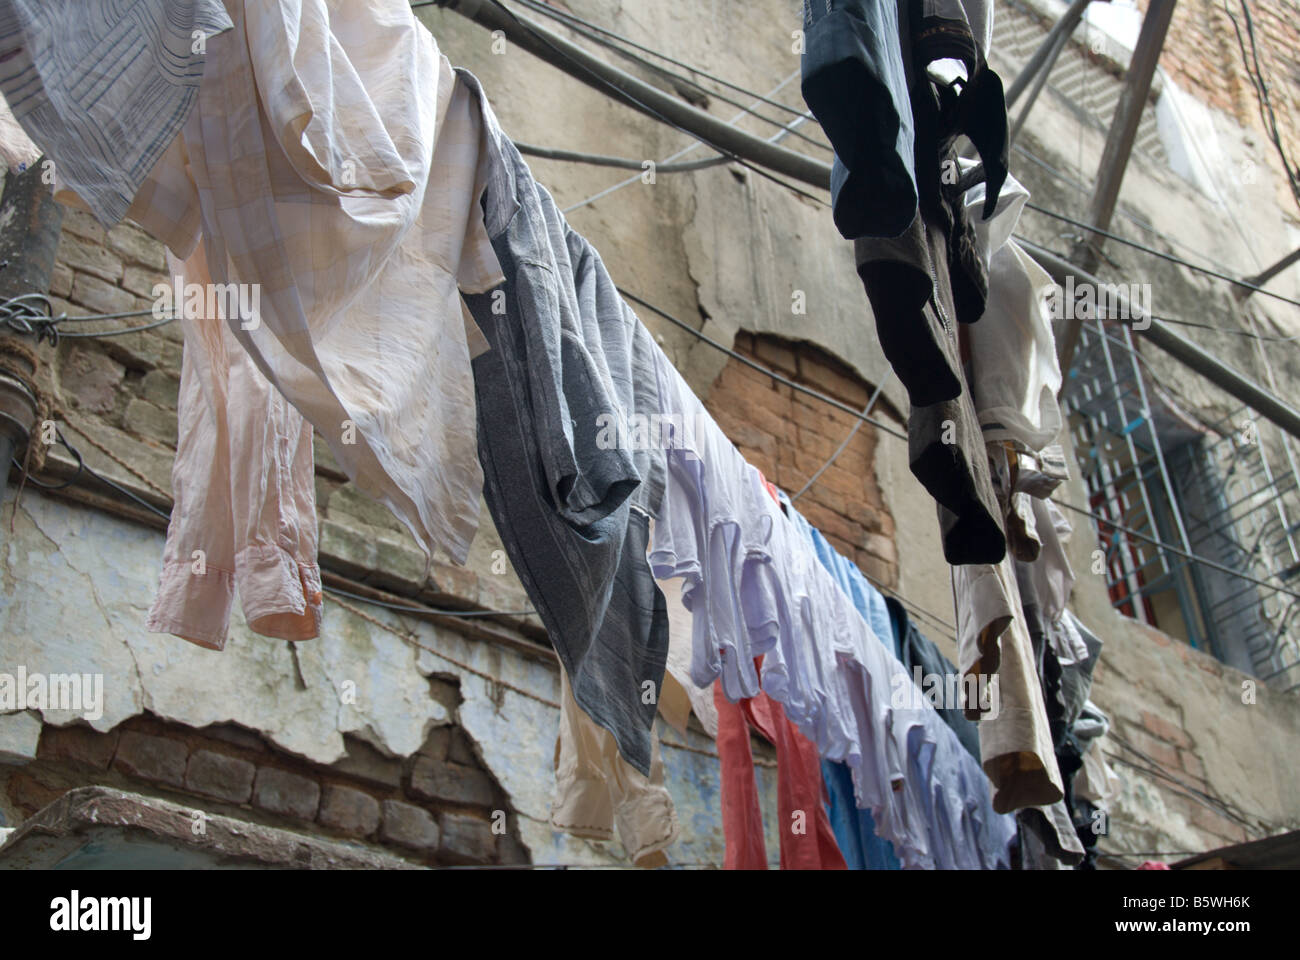 Righe di panni appesi ad asciugare su un tratteggio incrociato di fili e corde attraverso un vicoletto a Nuova Delhi in India. Foto Stock